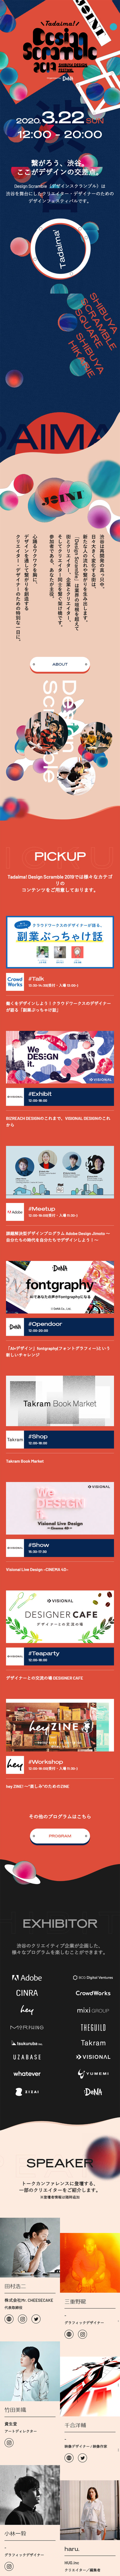 渋谷デザインフェスティバル_sp_1